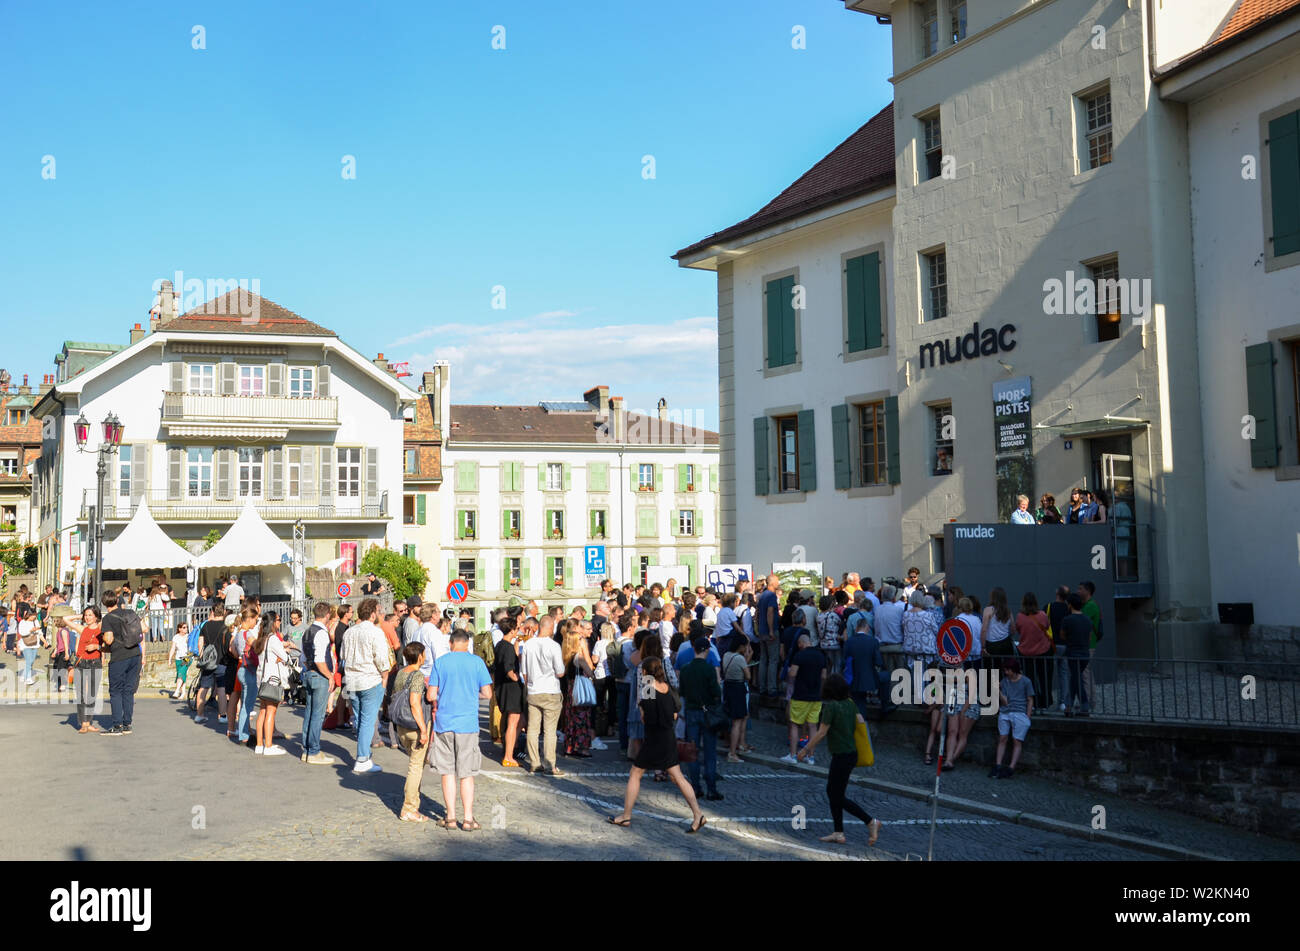 Lausanne, Schweiz - 9. Juli 2019: Festival de la Cite in den Straßen der Schweizer Stadt. Traditionelle kulturelle Veranstaltung mit Konzerten, Theater, Tanz, bildende Kunst oder Zirkus. Bis zu 100.000 Besucher in 6 Tagen. Stockfoto